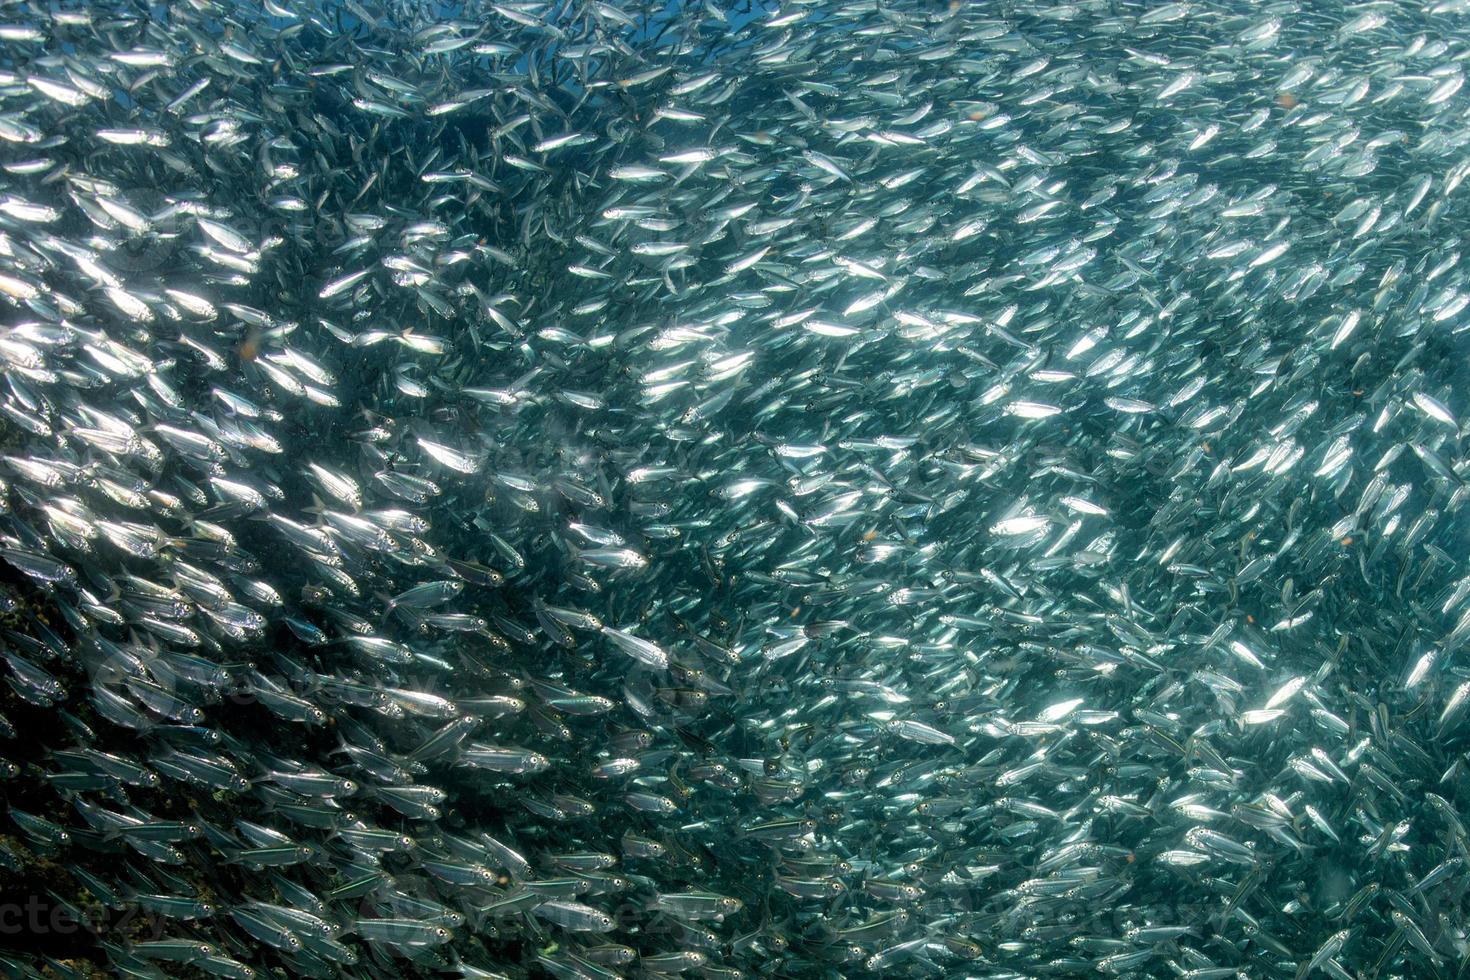 entrer à l'intérieur de l'école de poissons de sardine sous l'eau photo